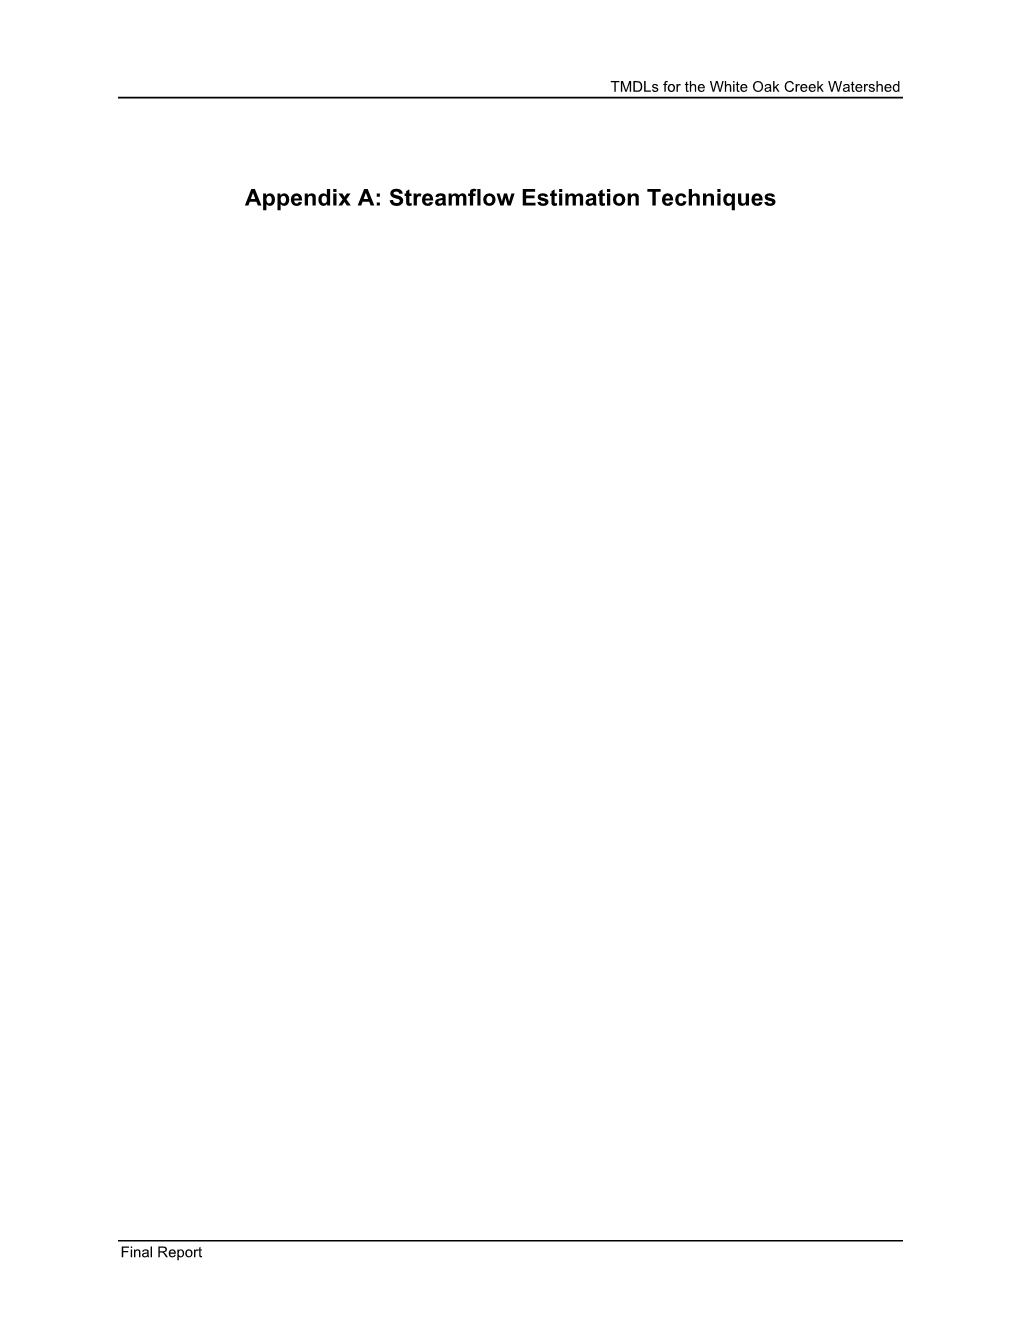 Appendix A: Streamflow Estimation Techniques